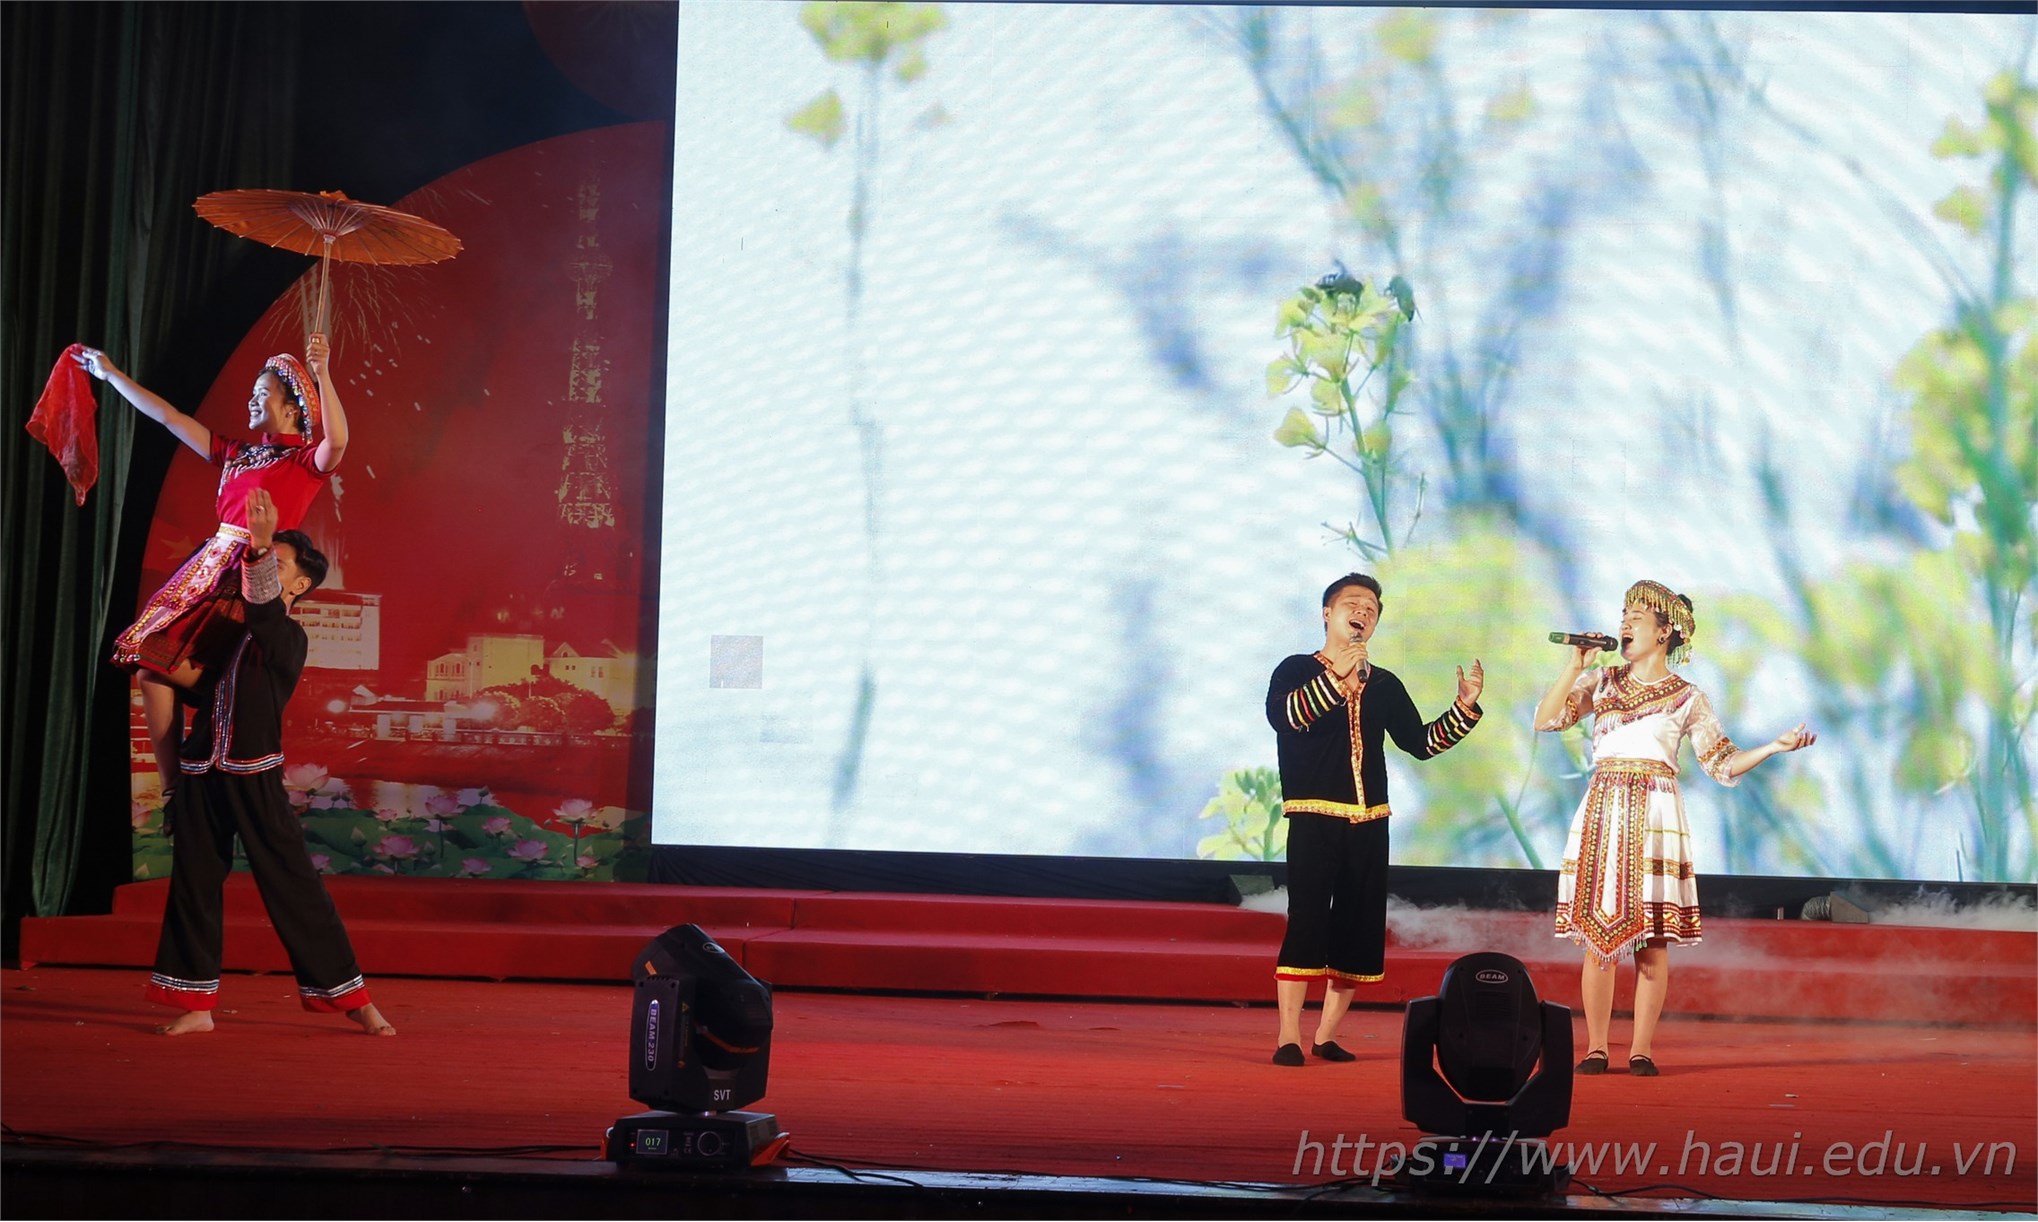 Đại học Công nghiệp Hà Nội đạt 2 giải vàng, 01 giải bạc và chứng nhận xuất sắc toàn đoàn tại Liên hoan Nghệ thuật Quần chúng tỉnh Hà Nam năm 2019